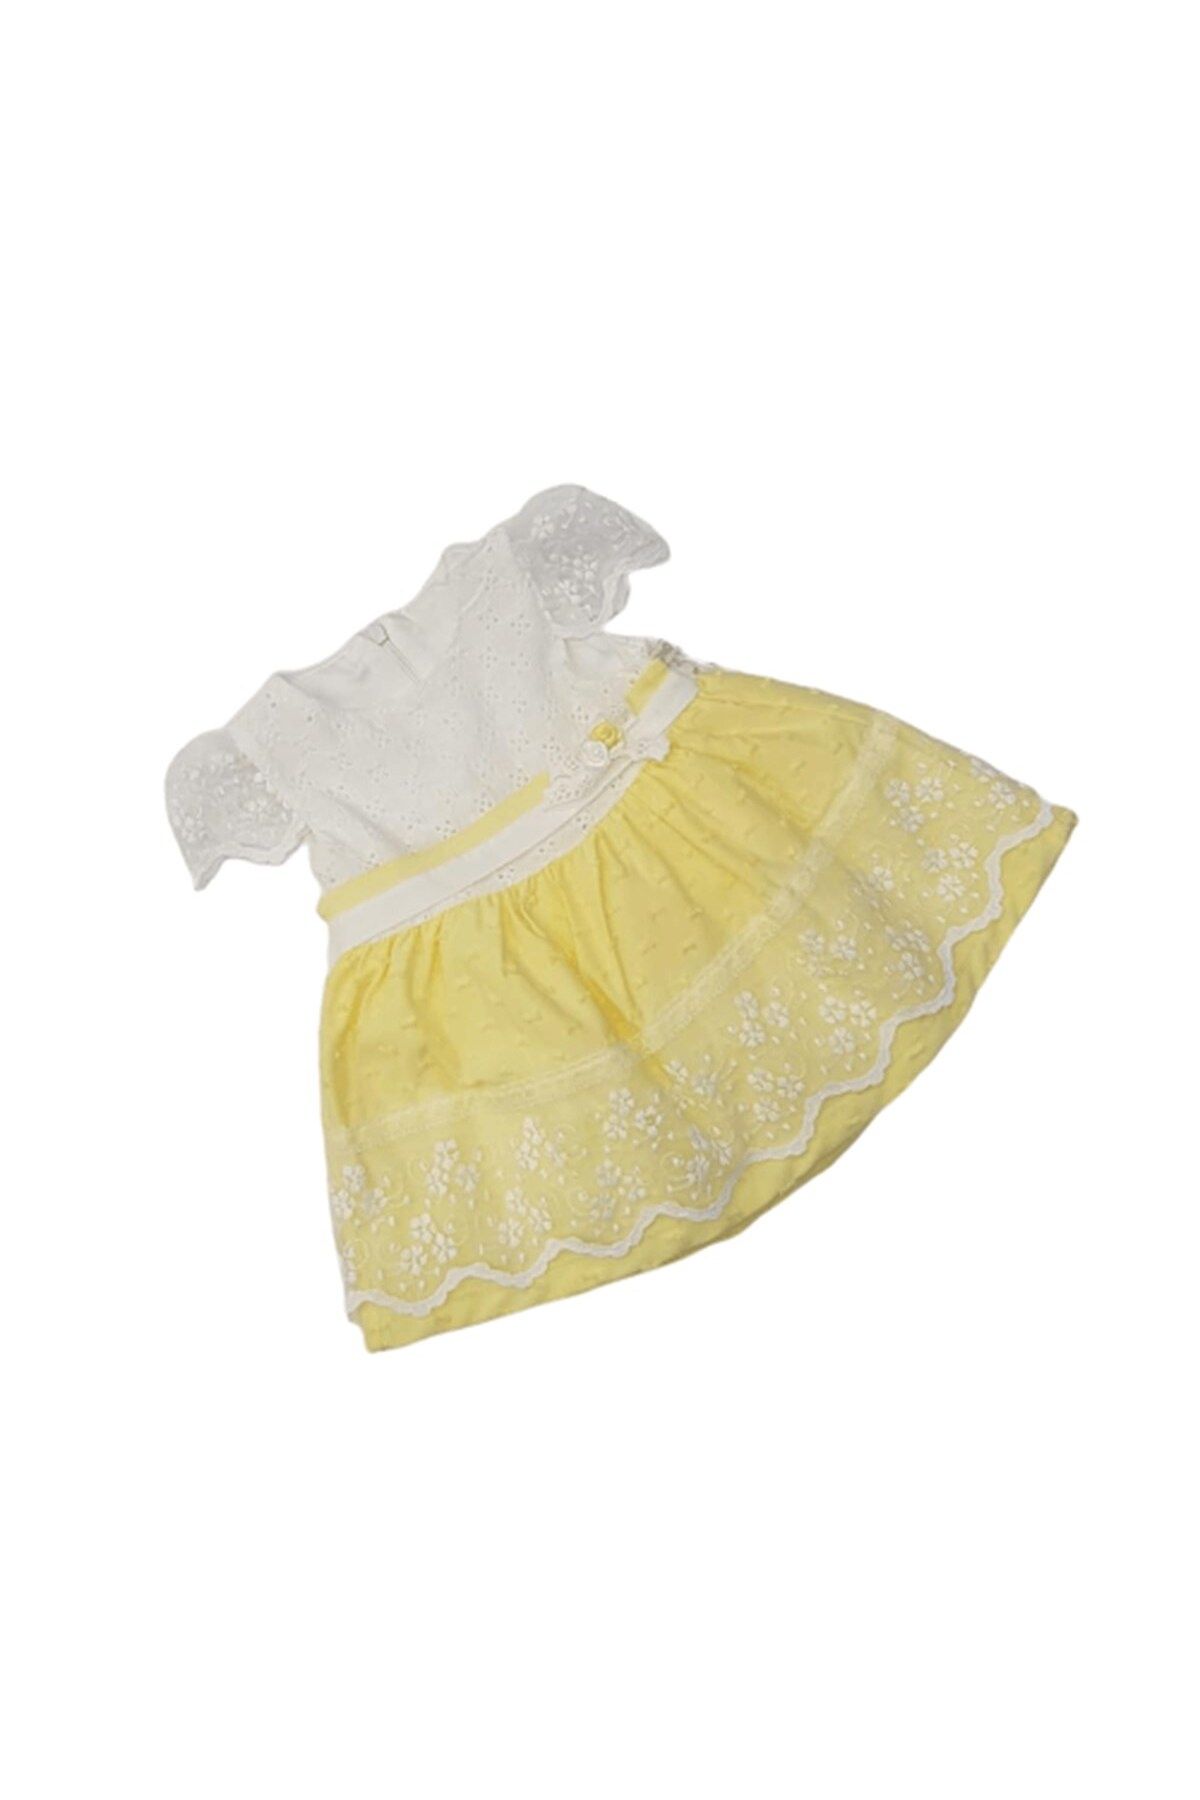 Genel Markalar Mymio Baby 2636 Kız Bebek Güpürlü Fiyonklu Penye Elbise